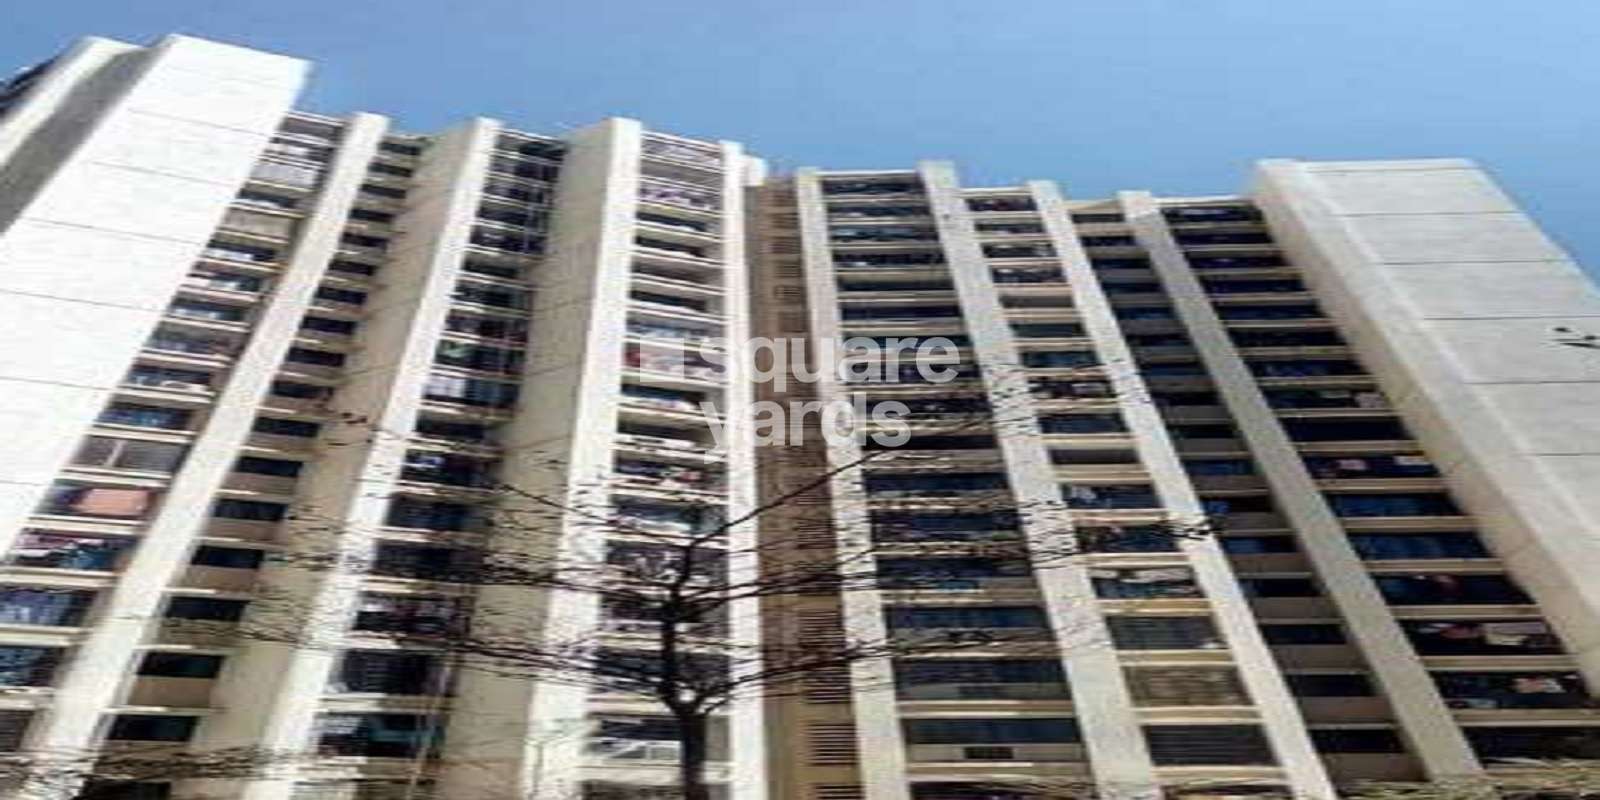 Runwal Estate Building No D1 D2 Chs Ltd Cover Image